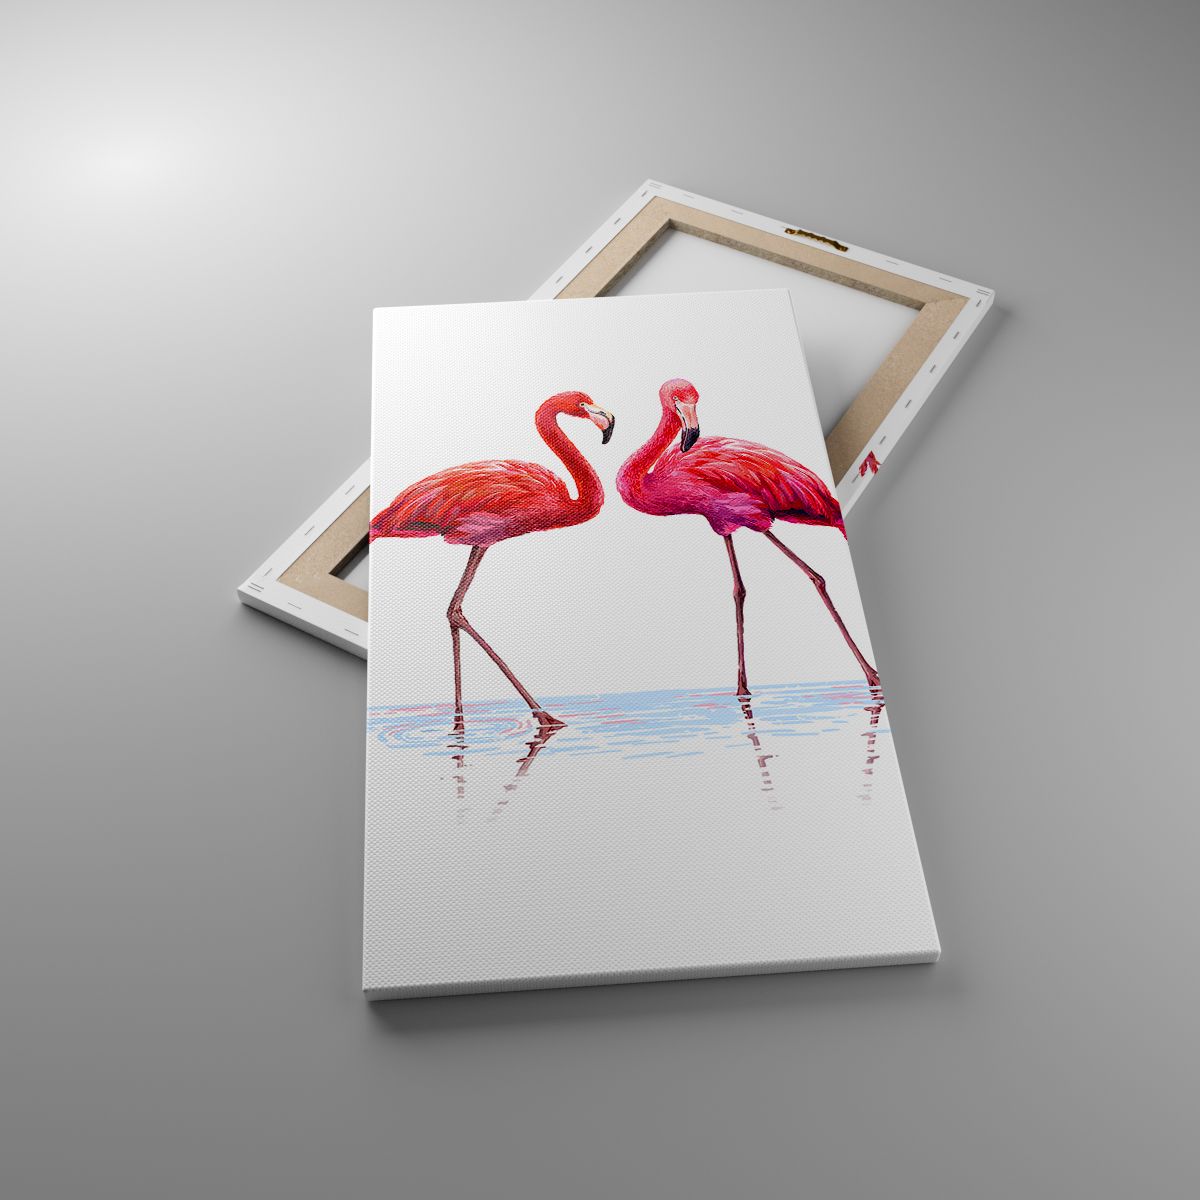 Obrazy Flamingi, Obrazy Ptaki, Obrazy Sztuka, Obrazy Zwierzęta, Obrazy Brazylia